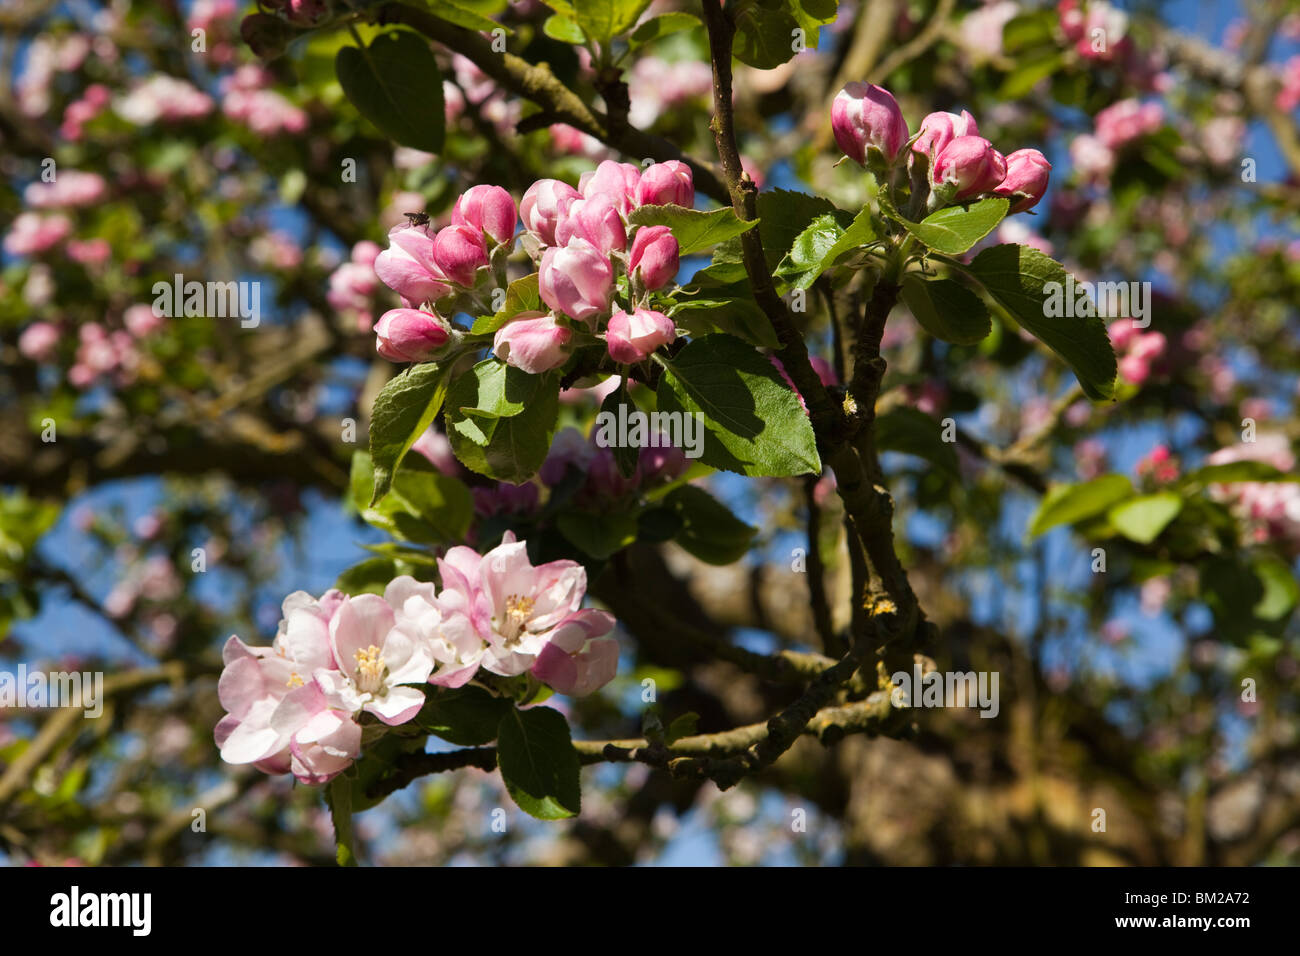 Regno Unito, Inghilterra, Herefordshire, Putley Dragon Orchard, insetti impollinatori sidro albero apple blossom nel bud Foto Stock